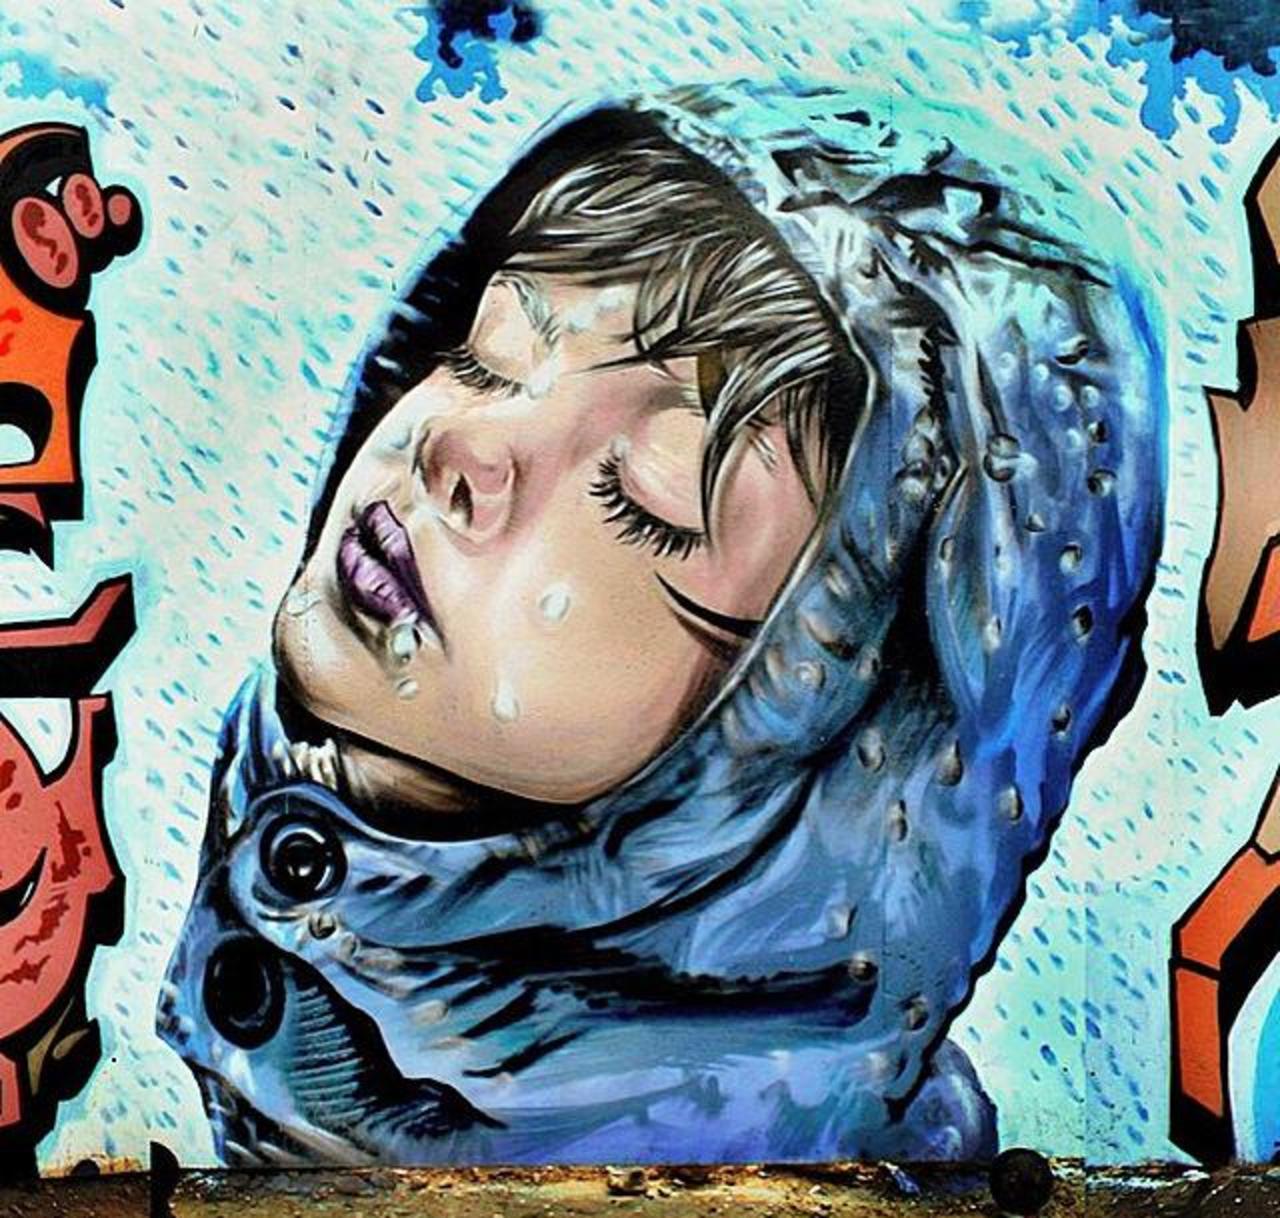 Street Art by the artist' Spooksoistreet' titled 'Raindrops' 

#art #arte #graffiti #streetart http://t.co/zyucmCfX9H #creative #artwork …